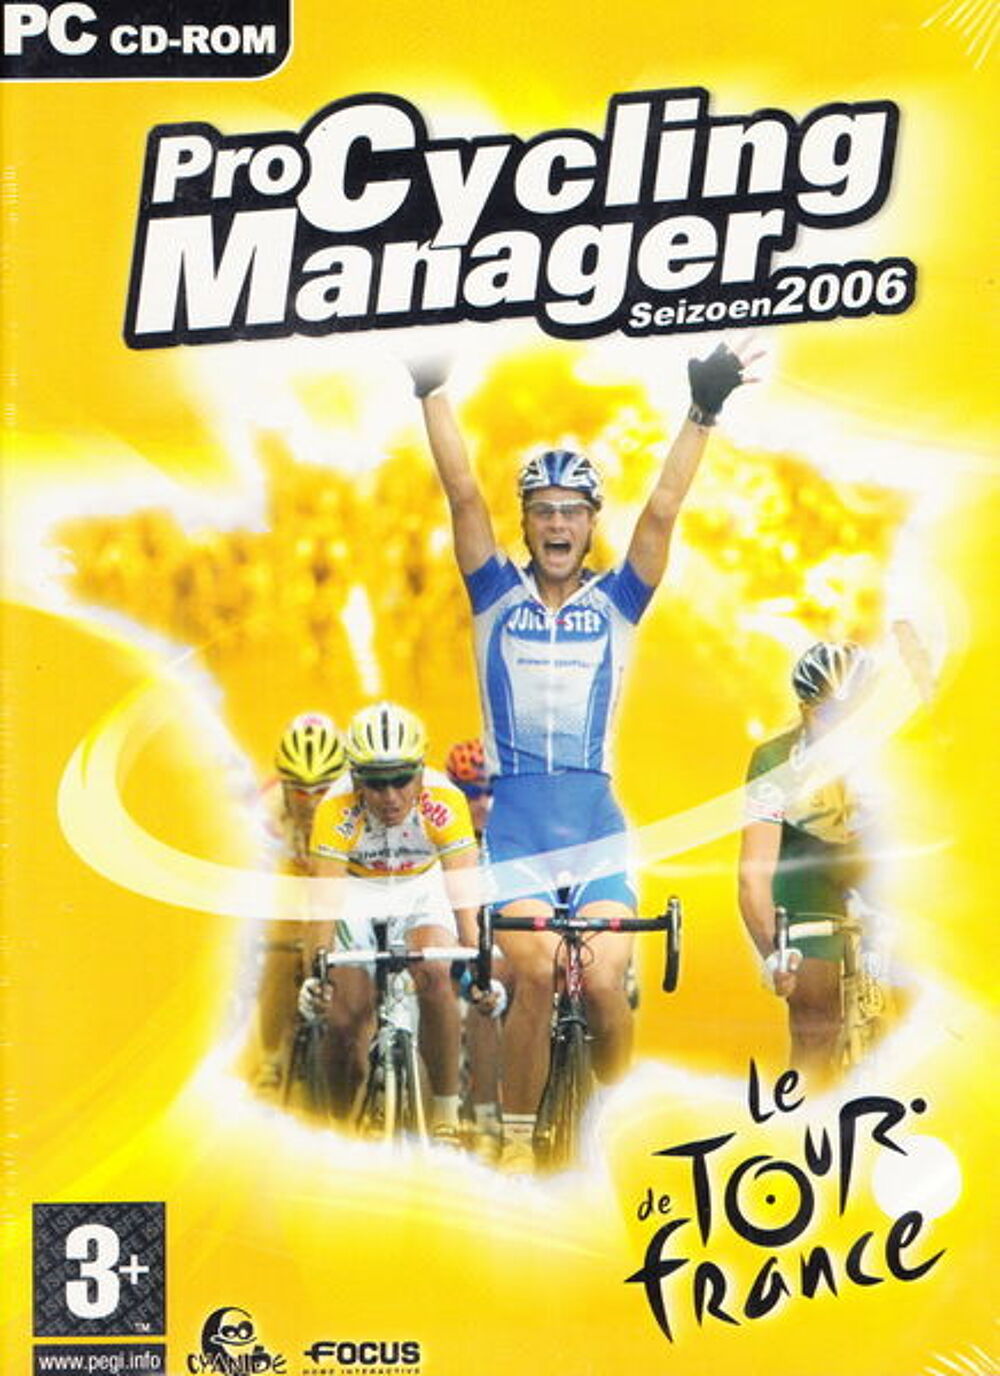 CD Jeu PC Pro Cycling Manager Seizoen, tour de France NEUF
Consoles et jeux vidos